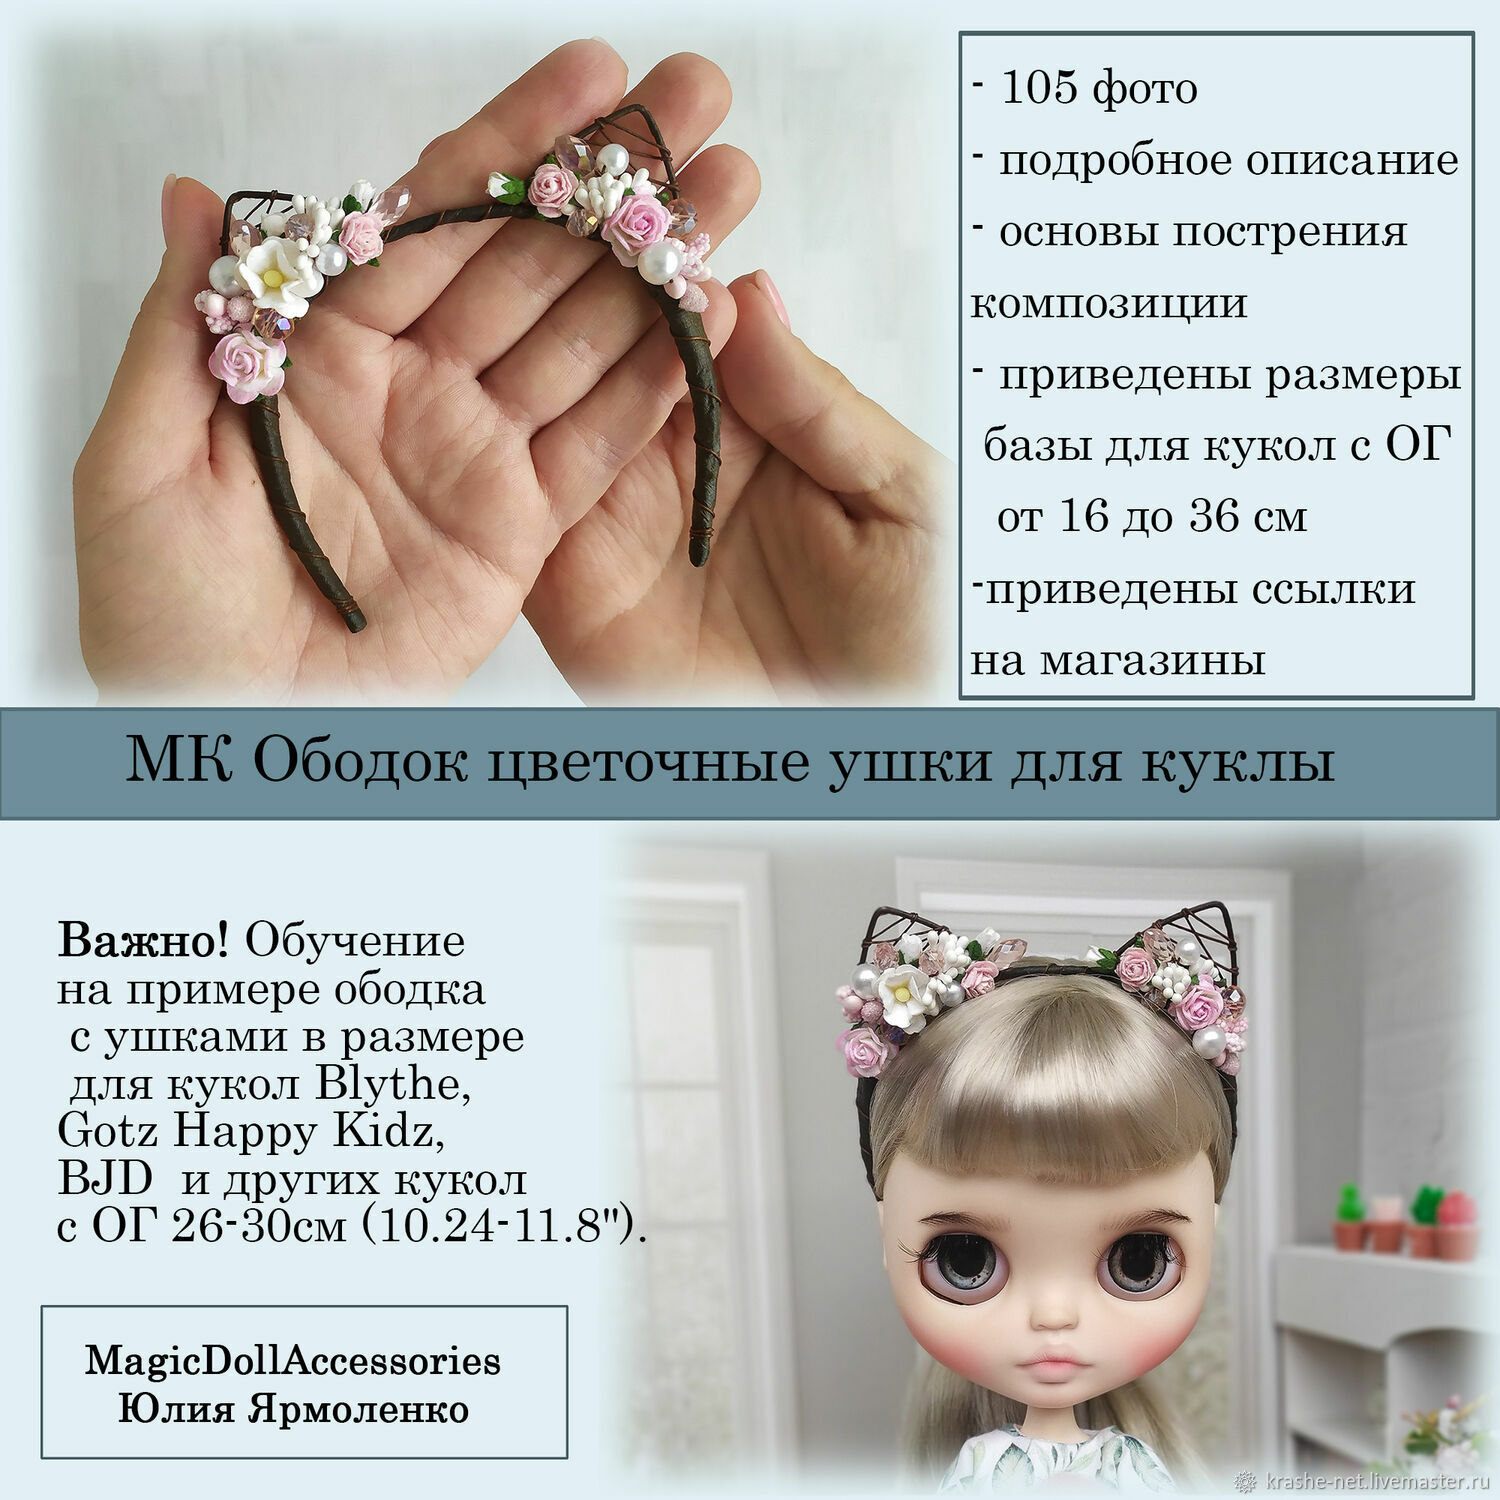 OLX.ua - объявления в Украине - лиси ушки